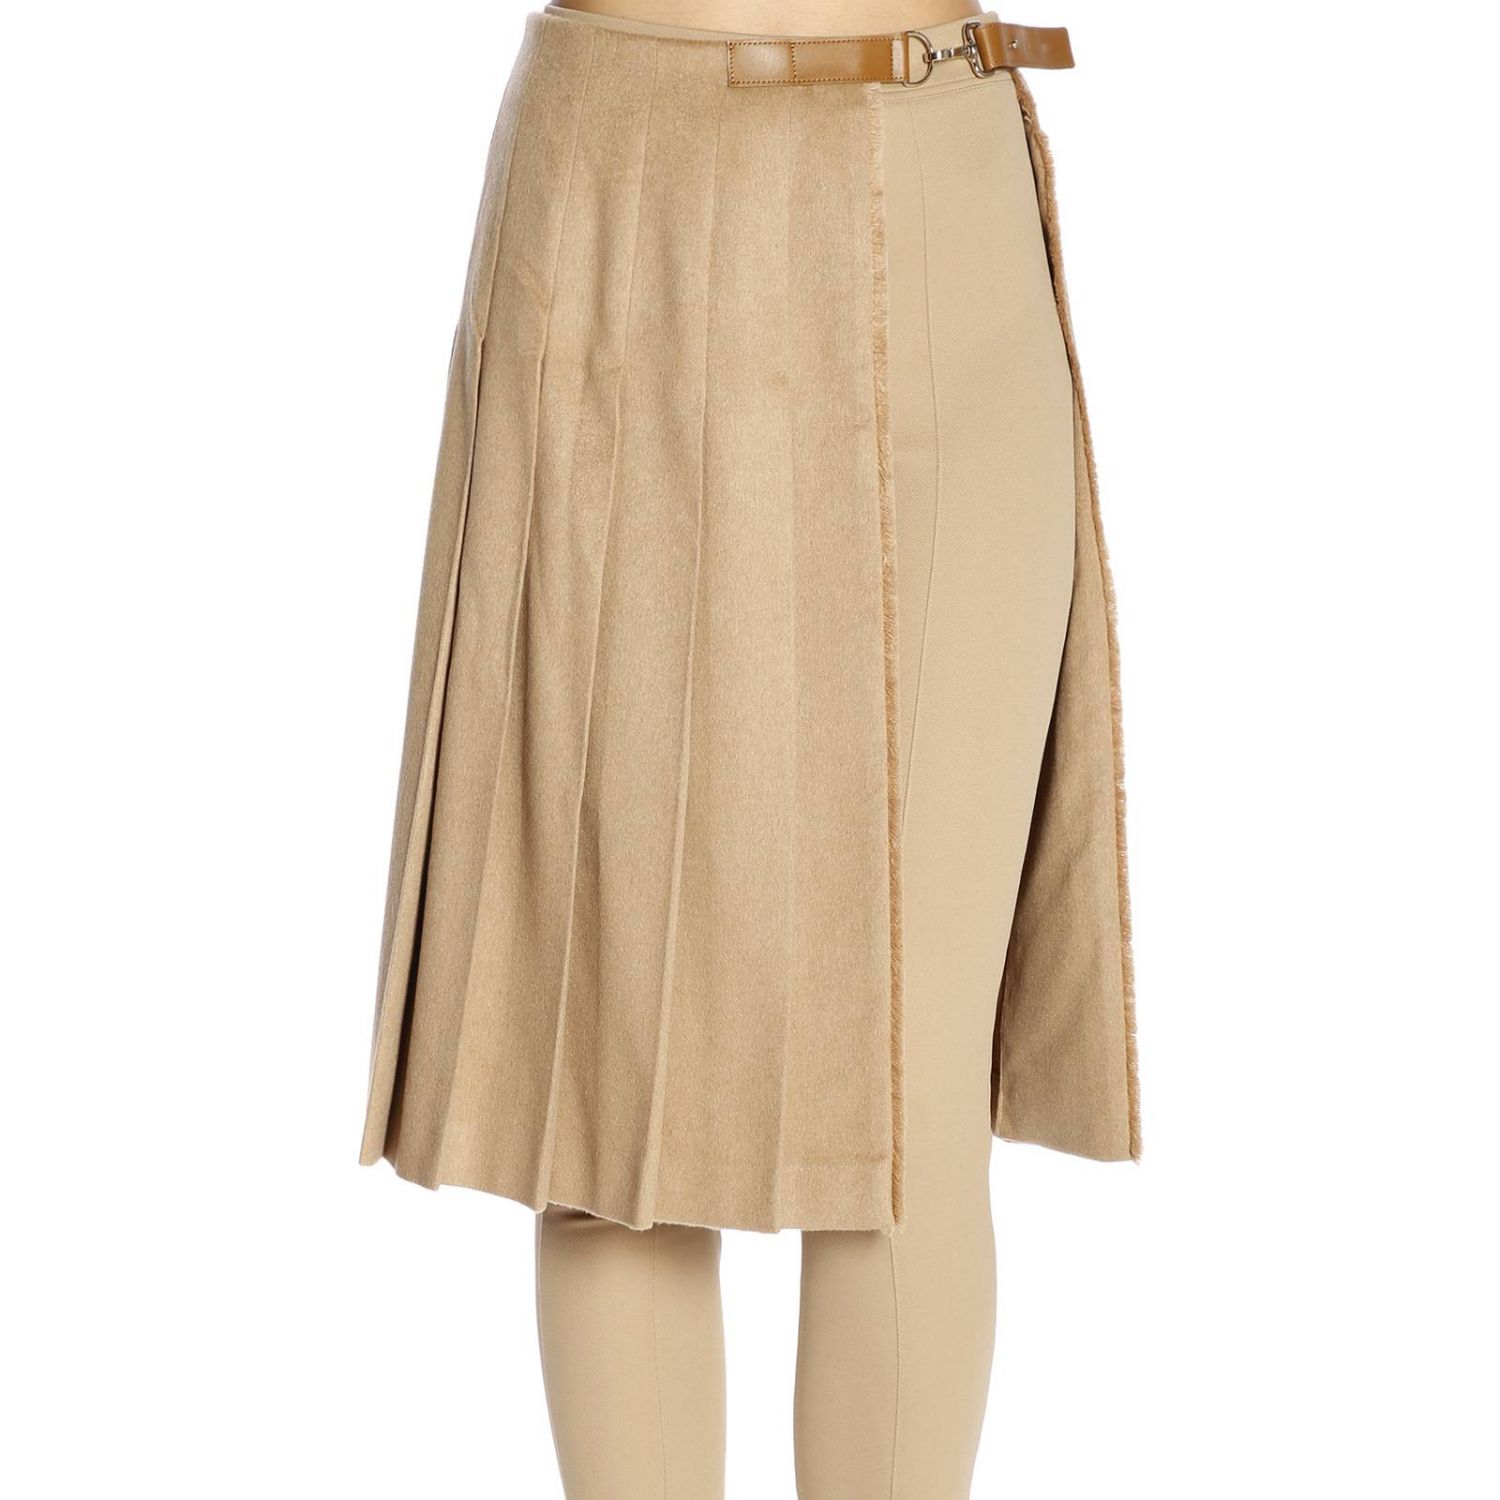 Max Mara Outlet: Skirt women | Skirt Max Mara Women Camel | Skirt Max ...